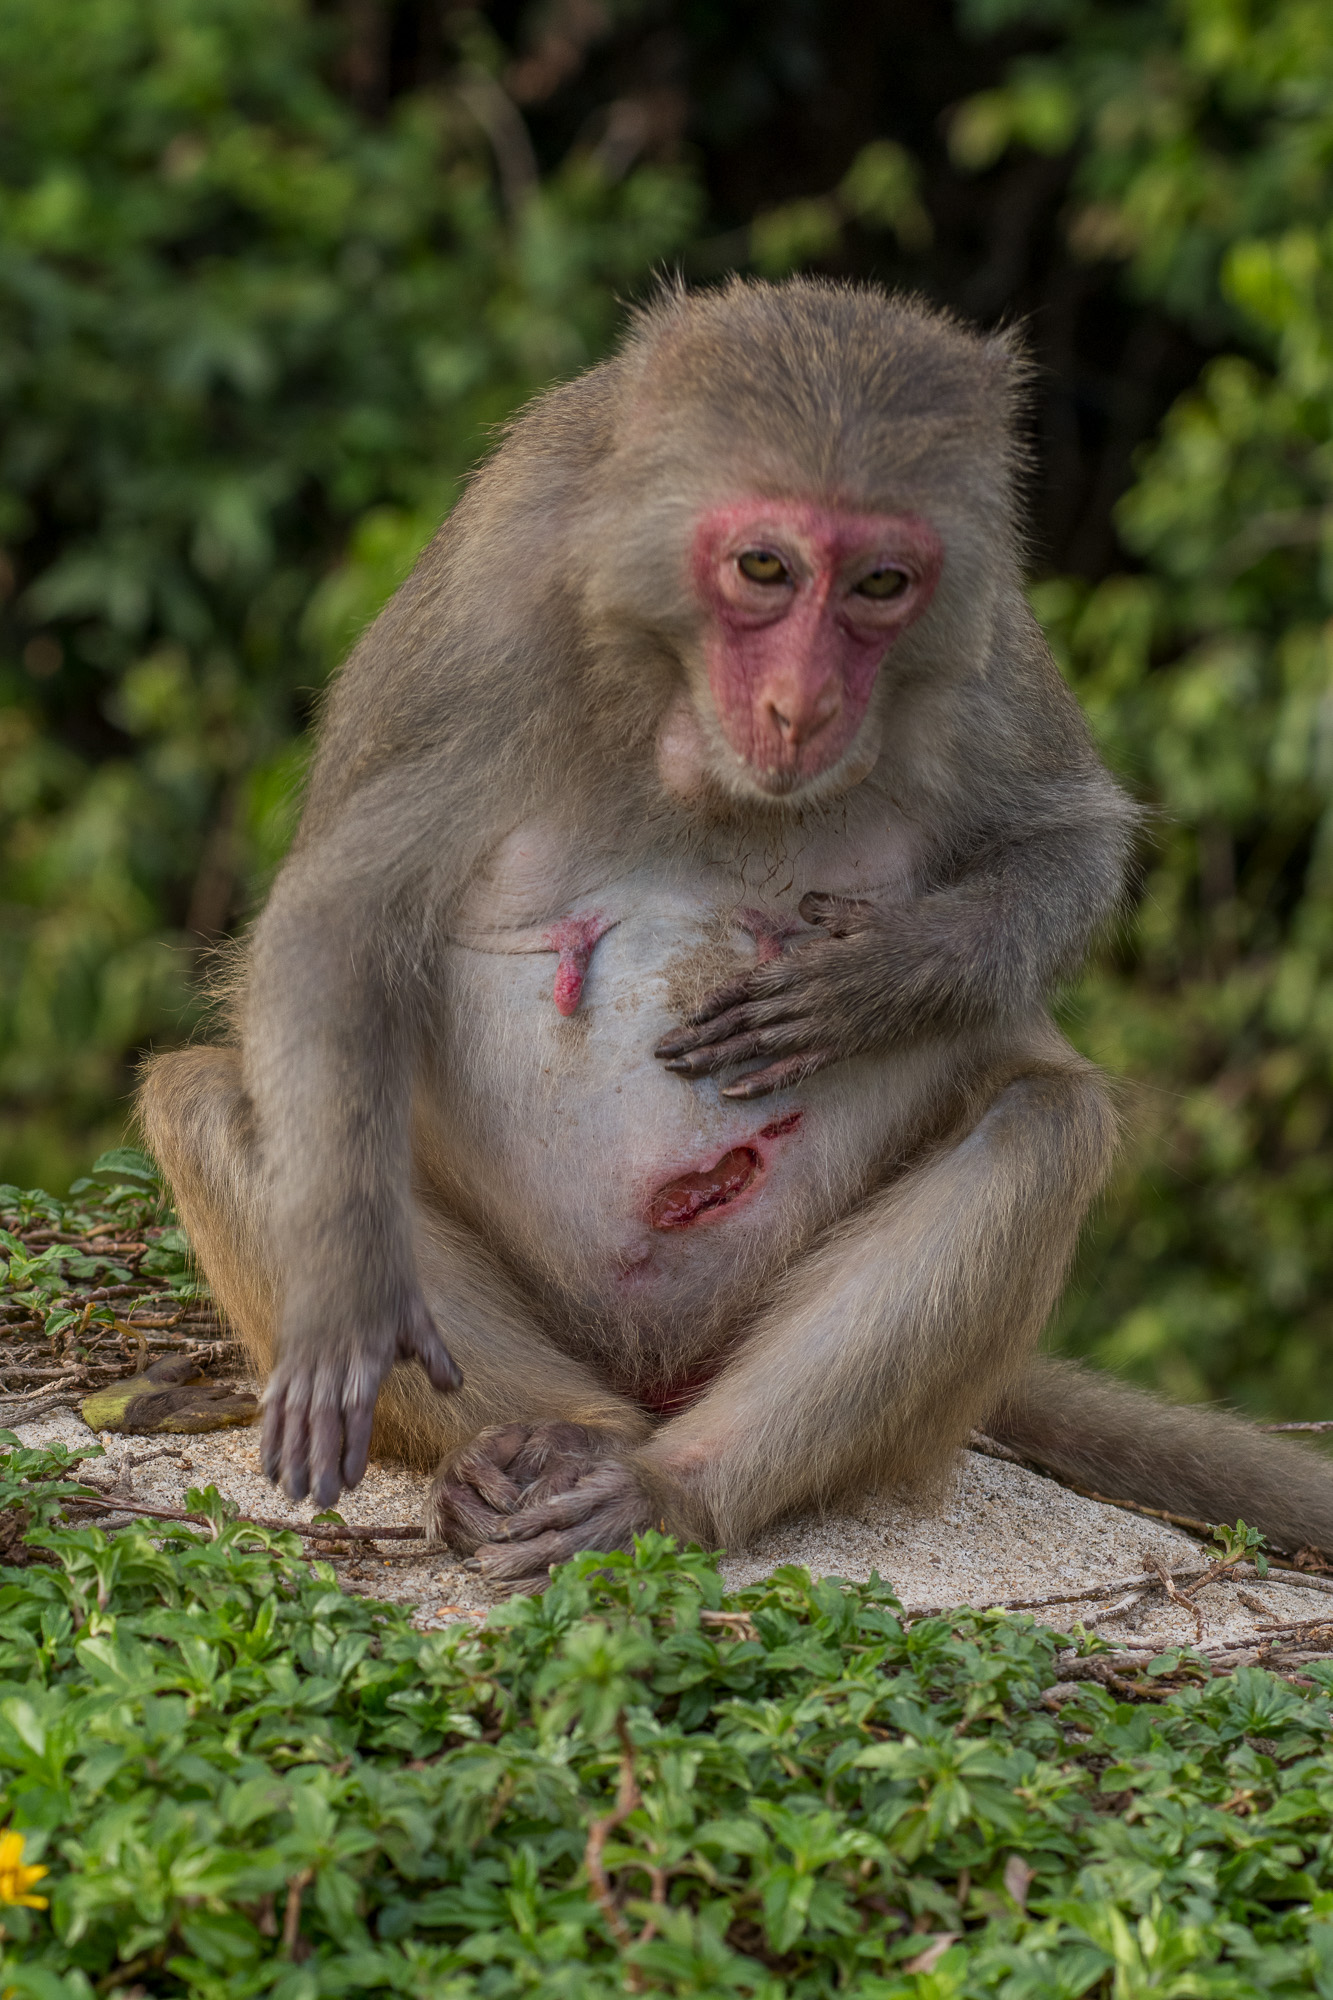 Khỉ con đầy thương tích nên được yêu thương và chăm sóc. Hãy đến với chúng tôi để chiêm ngưỡng hình ảnh đáng yêu của những con khỉ con này, và cùng chia sẻ niềm yêu thương với chúng.